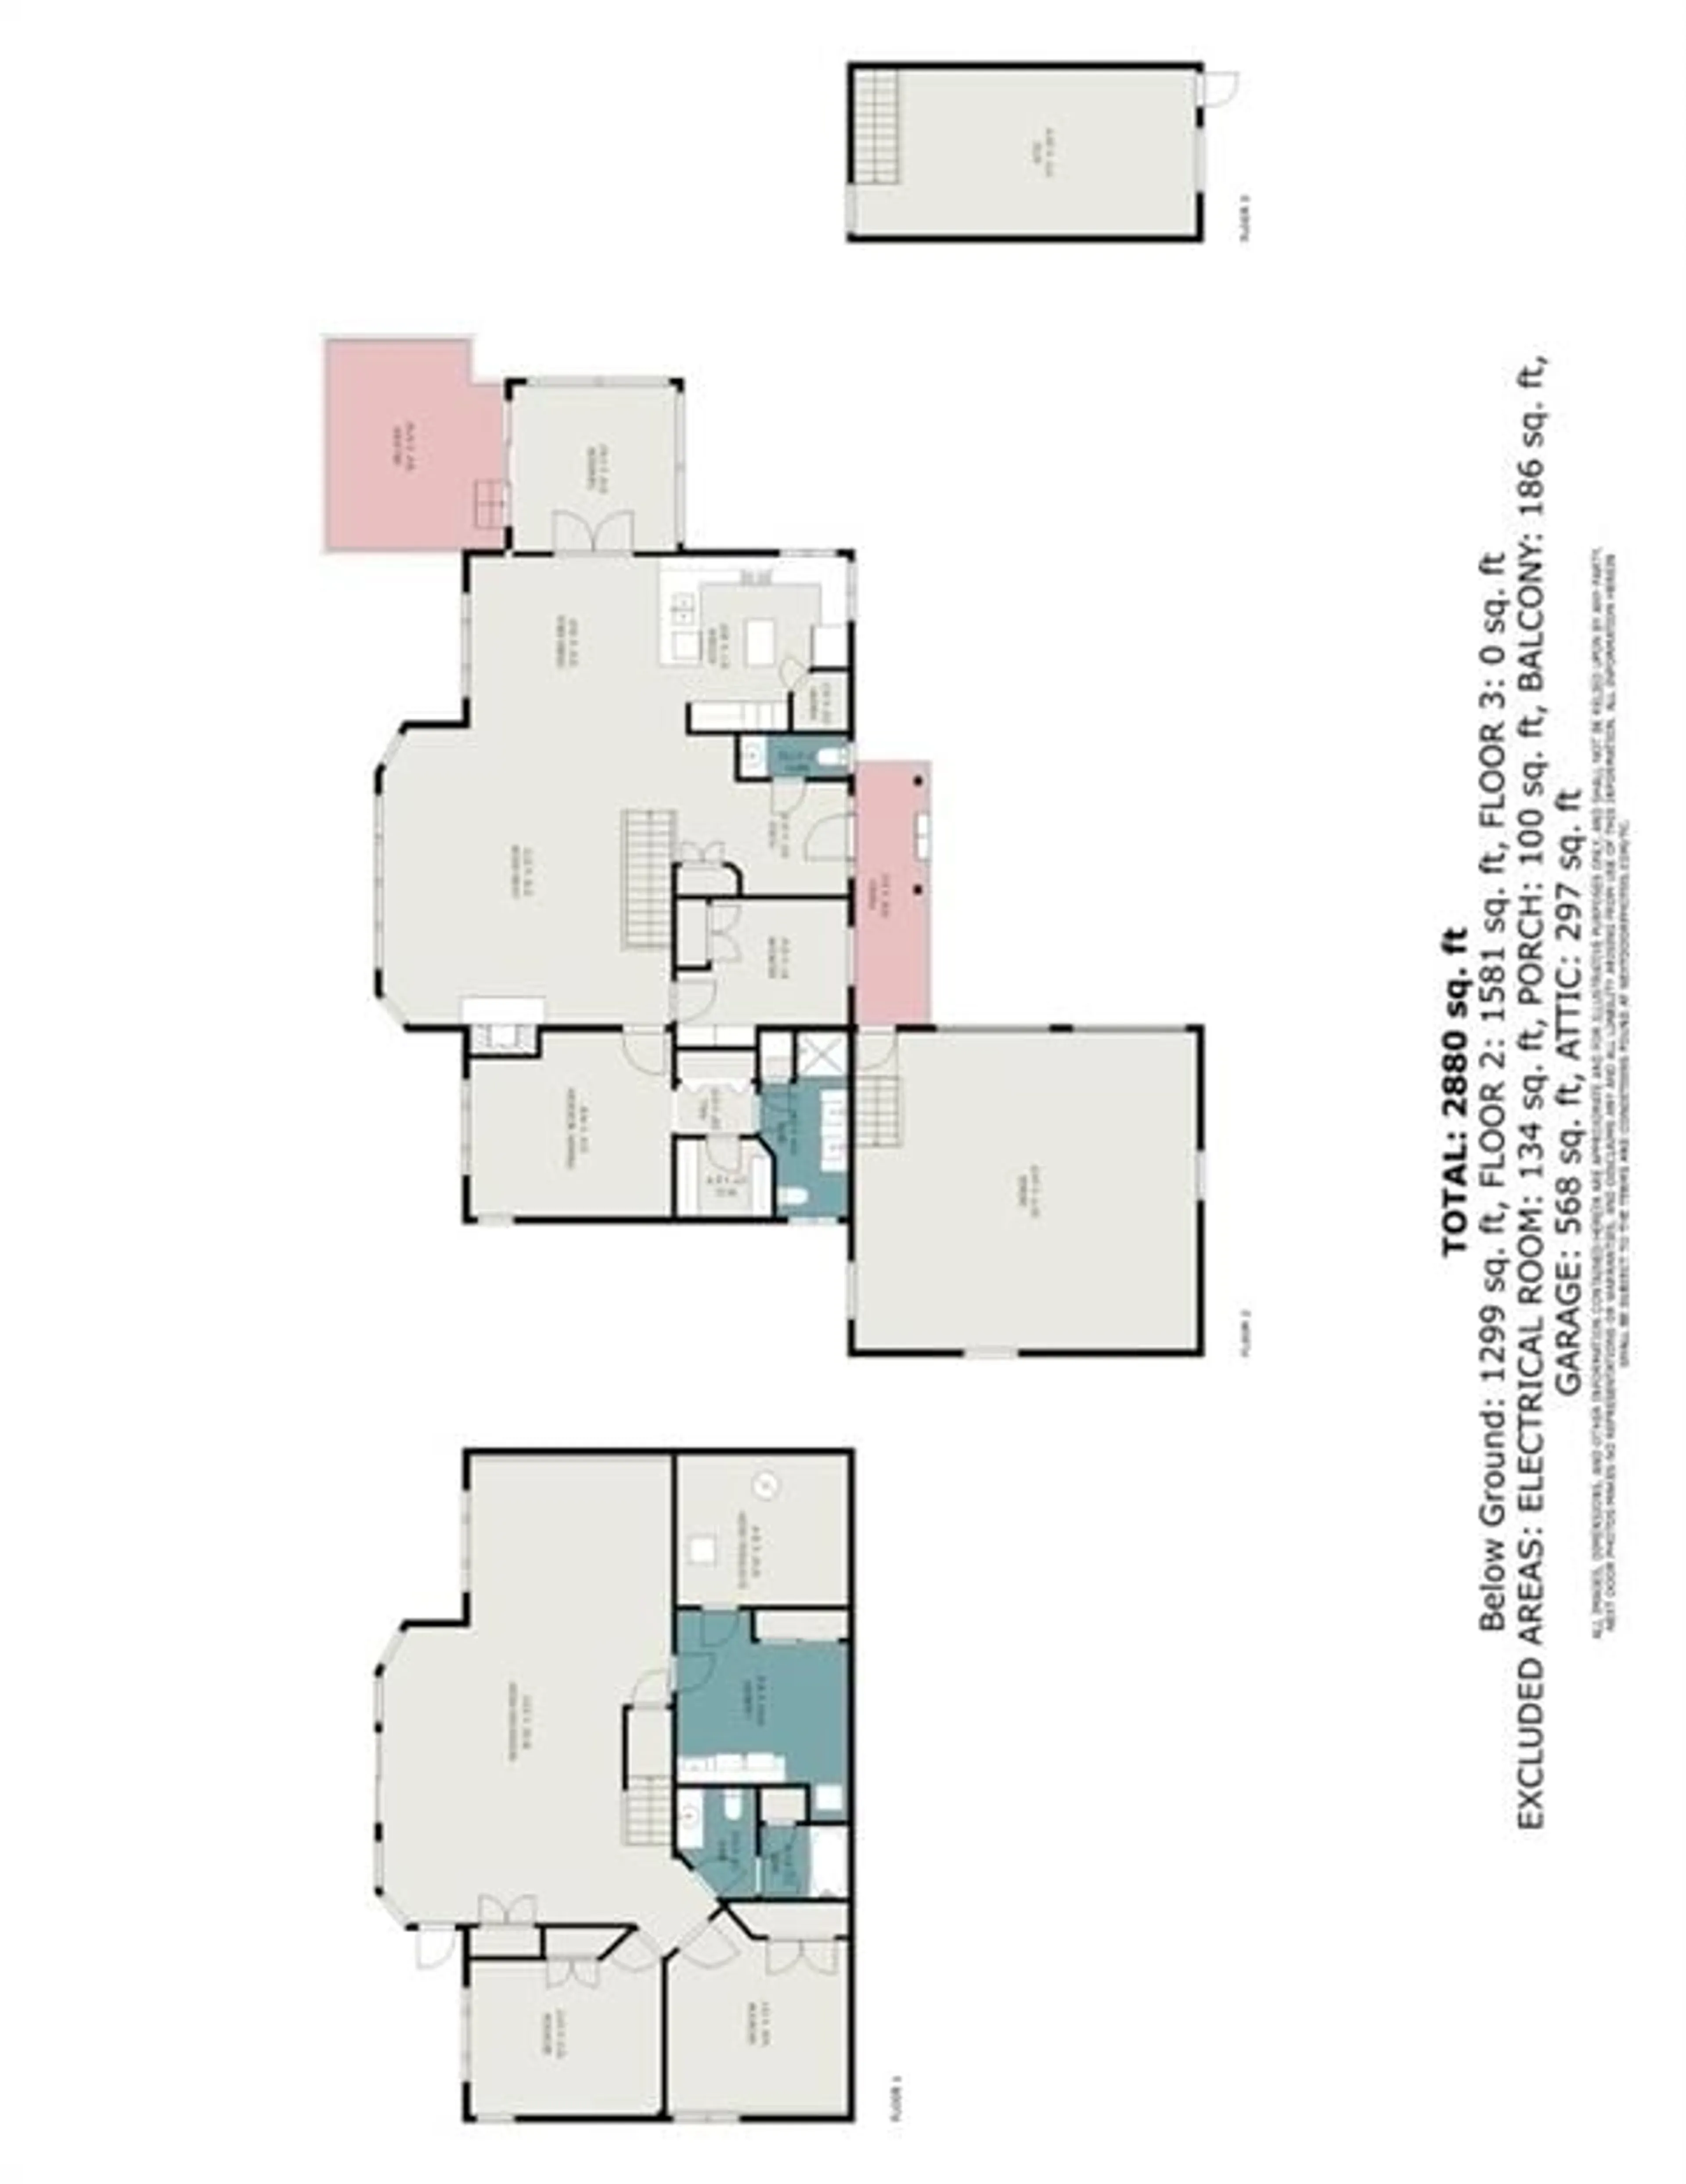 Floor plan for 599 BIG RIDEAU NORTH SHORE Rd, Perth Ontario K7H 3C5